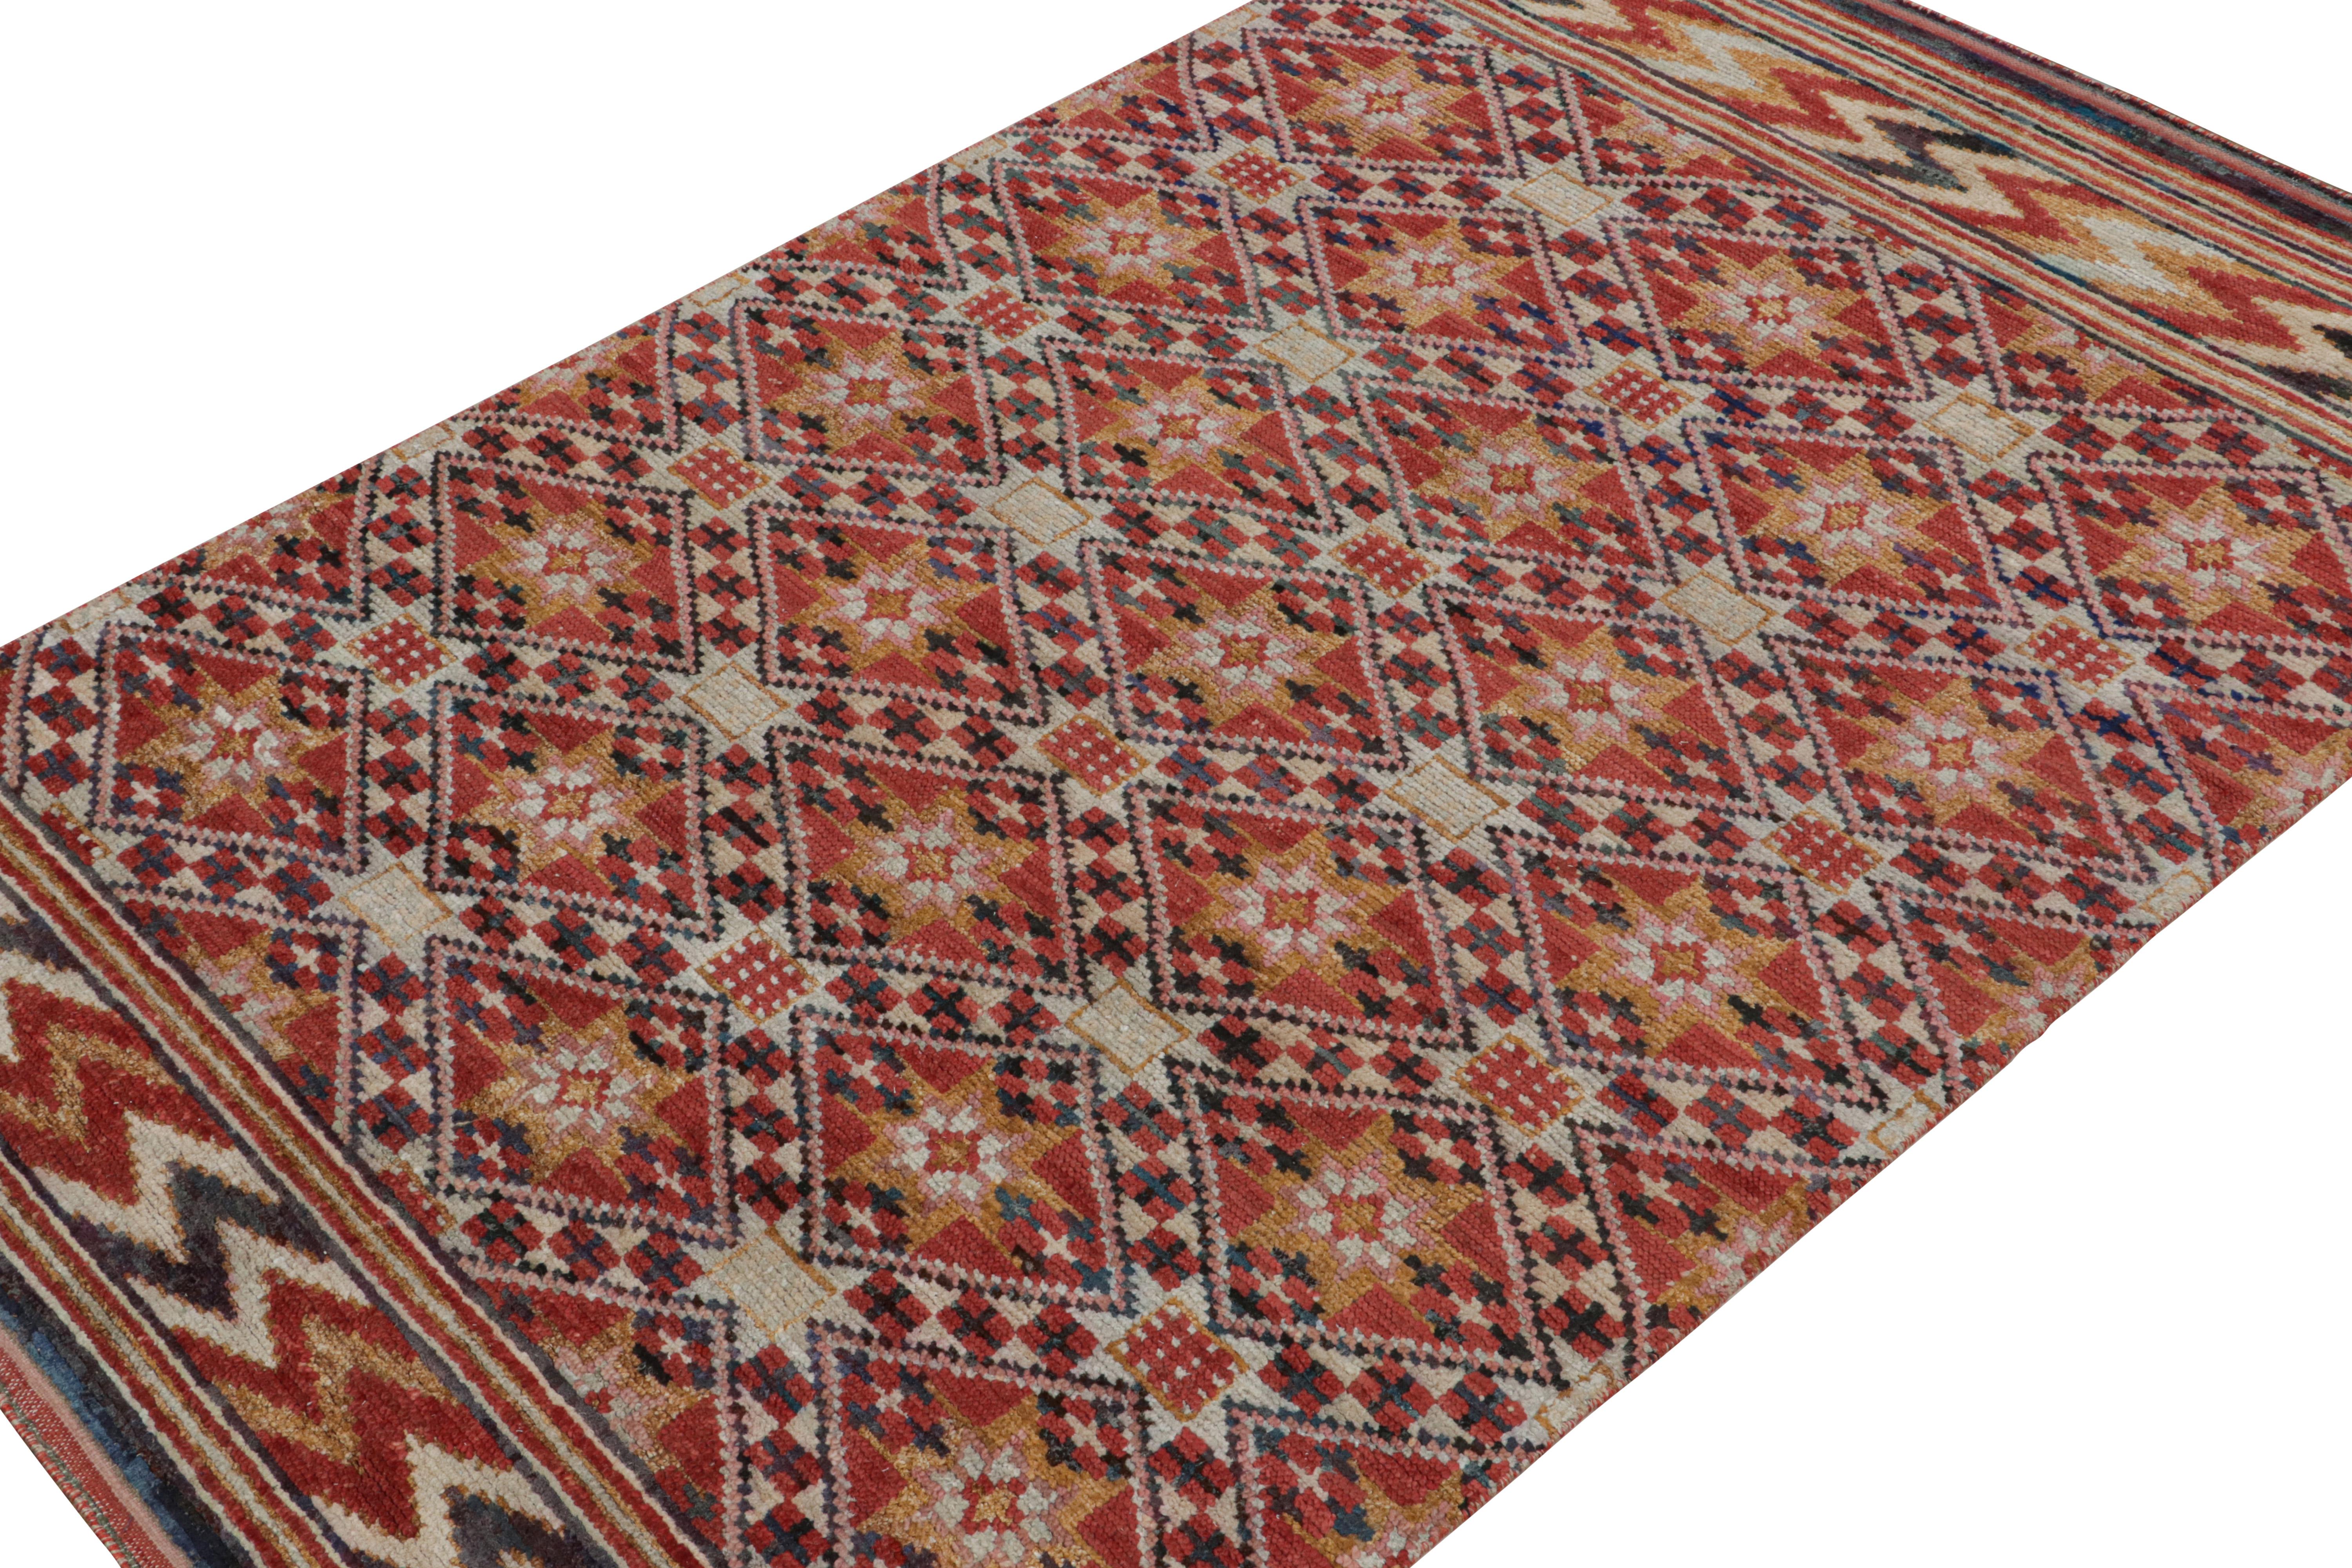 Noué à la main en laine, soie et coton, ce tapis 6x10 est un nouvel ajout à la collection de tapis marocains de Rug & Kilim. 

Sur le Design :

Ce tapis est une version contemporaine du style berbère primitiviste, avec des motifs géométriques dorés